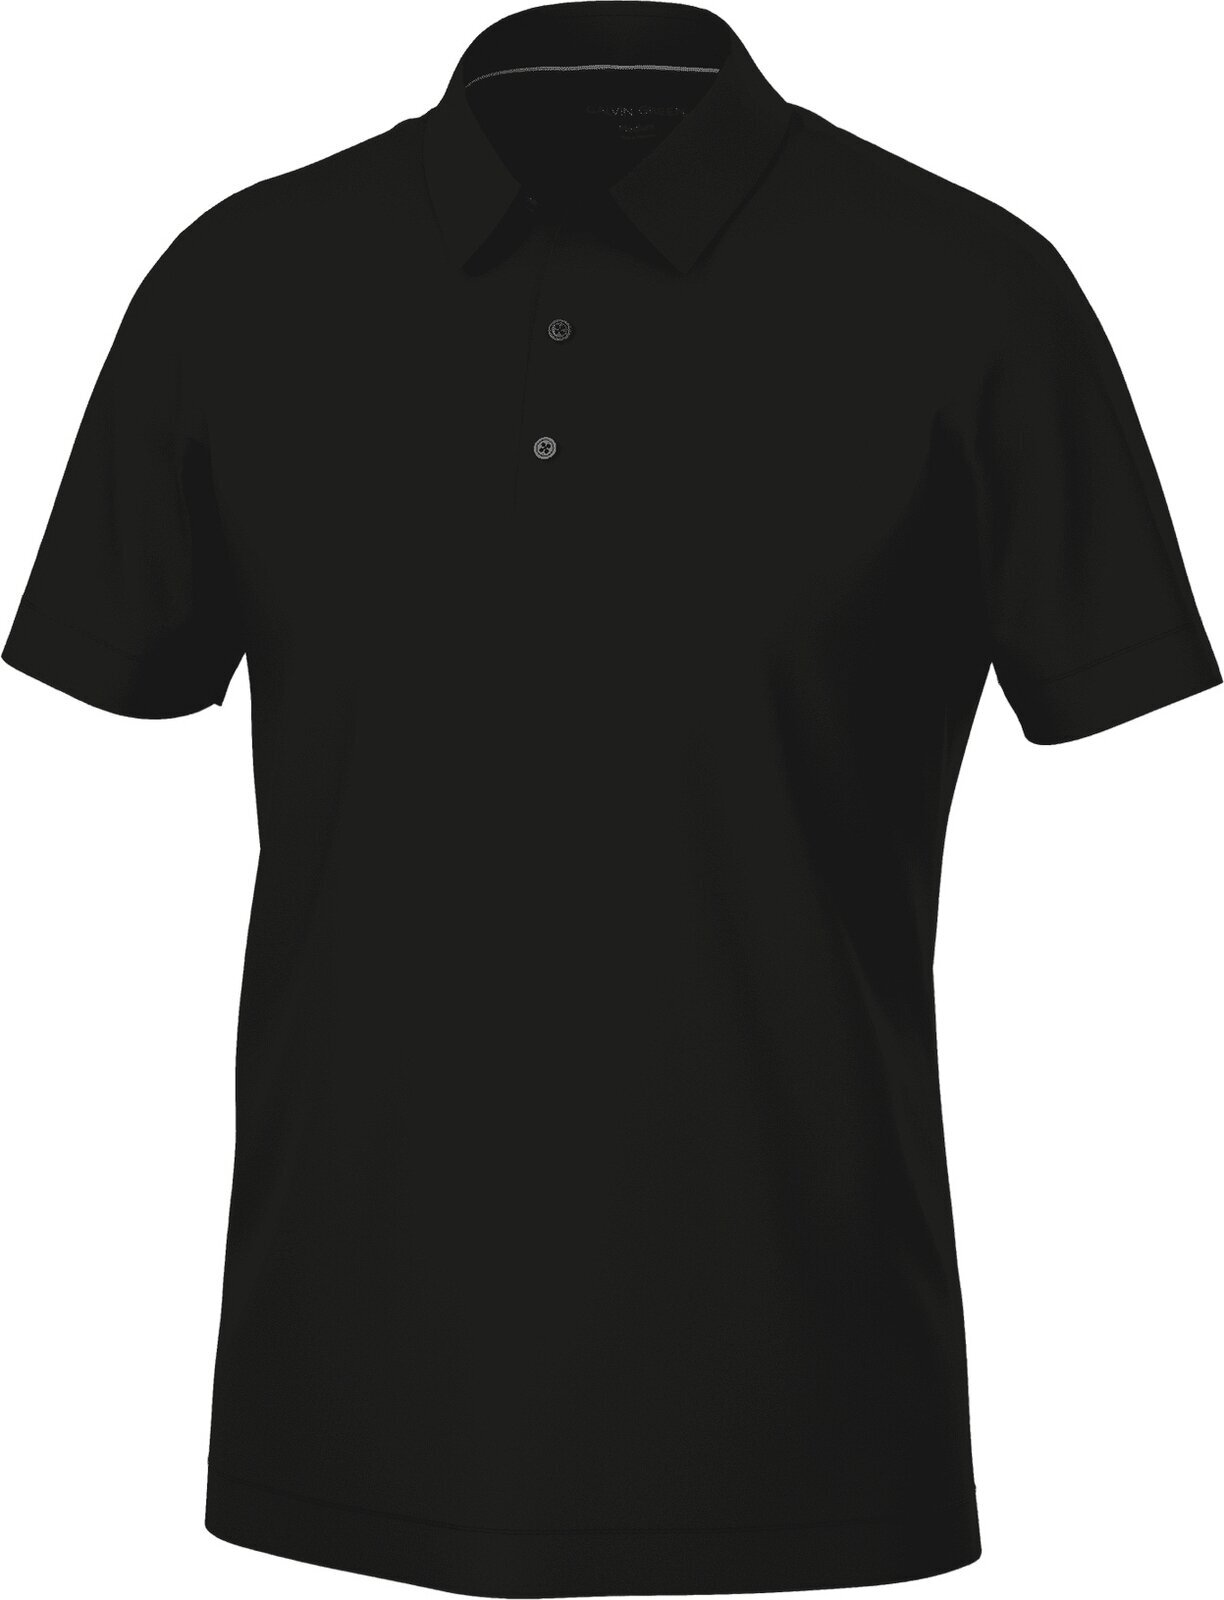 Camiseta polo Galvin Green Marcelo Mens Polo Shirt Black M Camiseta polo